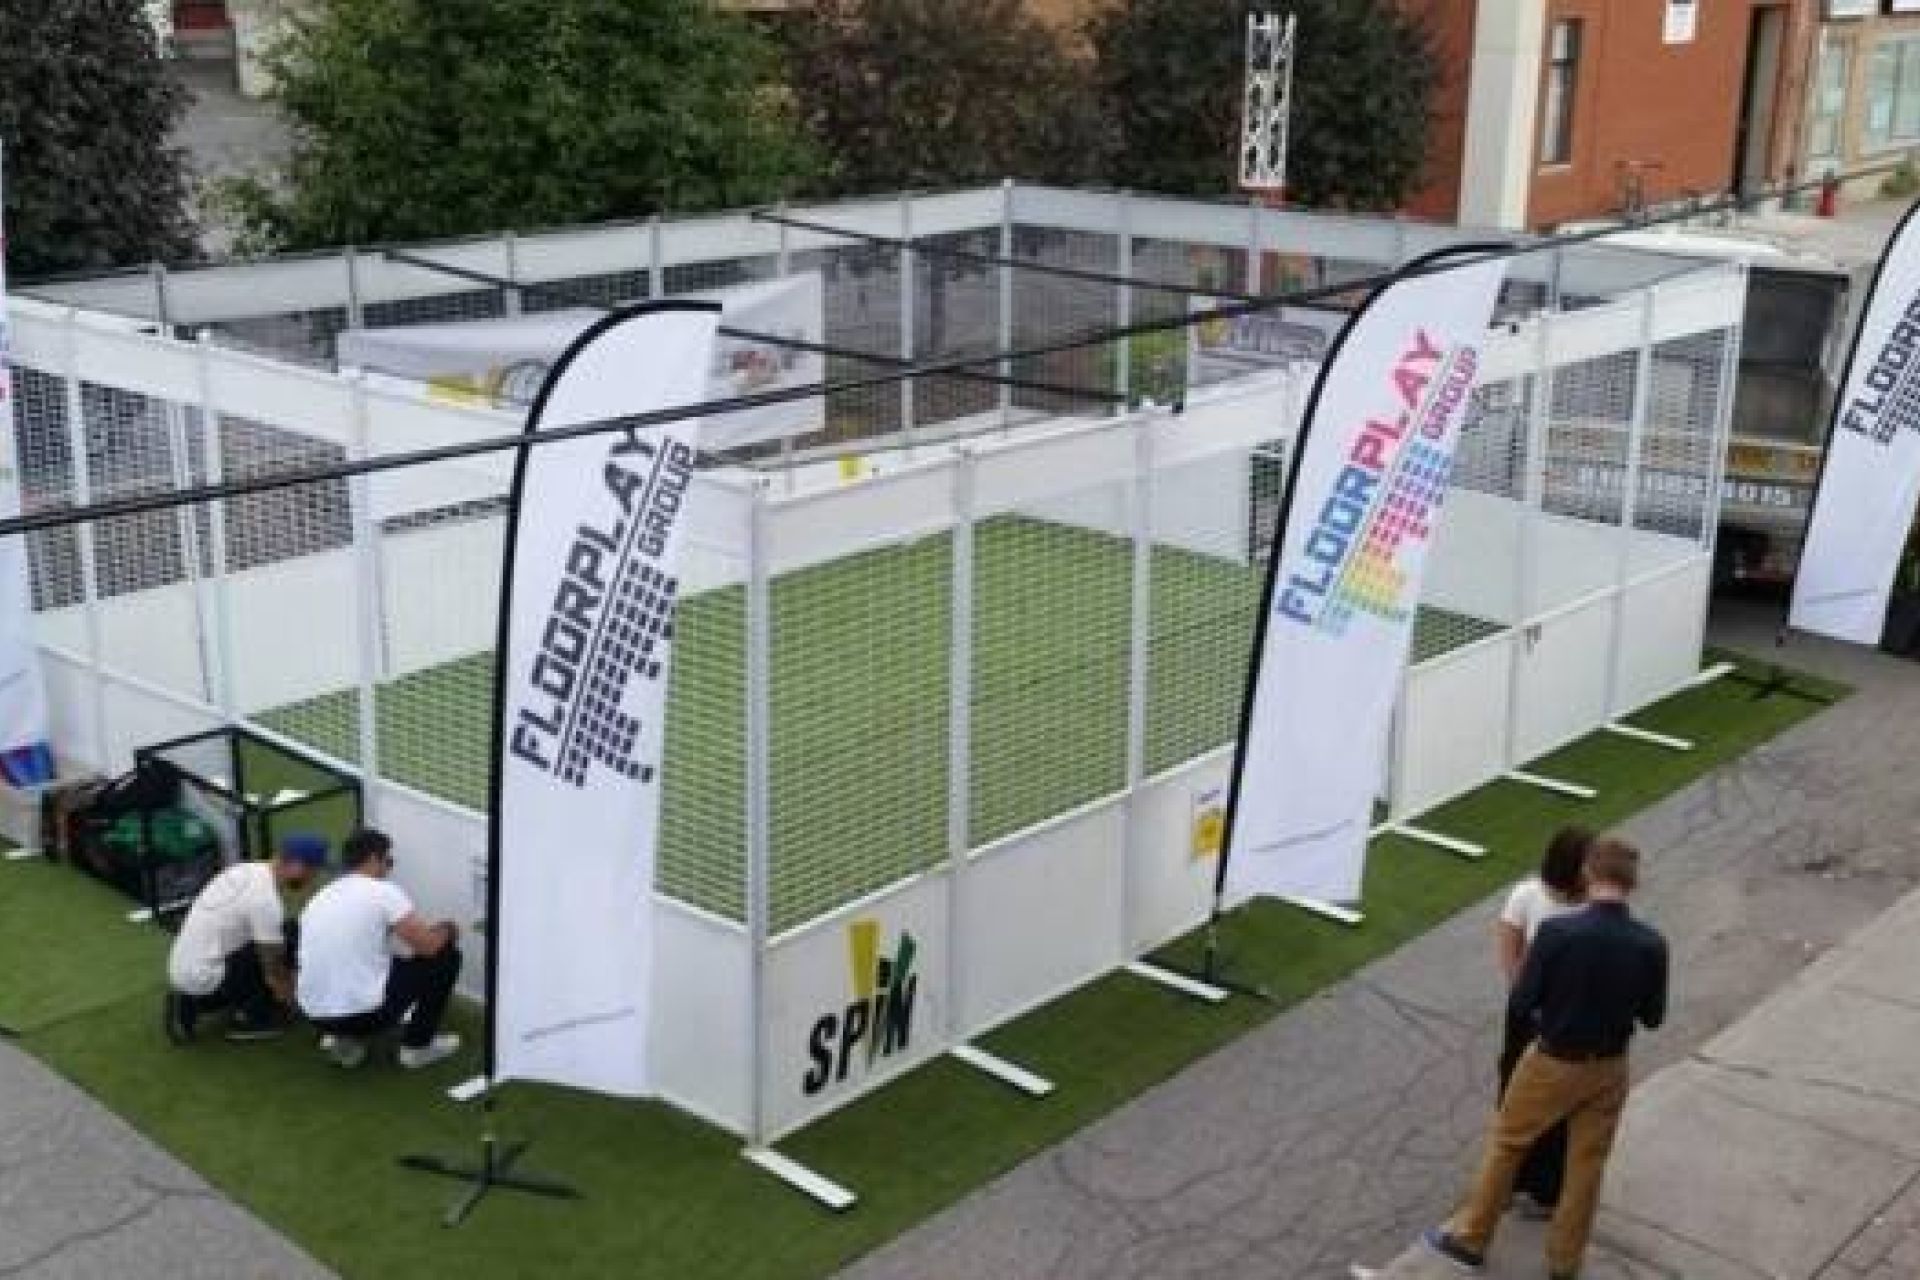 Revêtement en gazon synthétique pour cette cage multisport équipée de buts : hockey ou foot ?